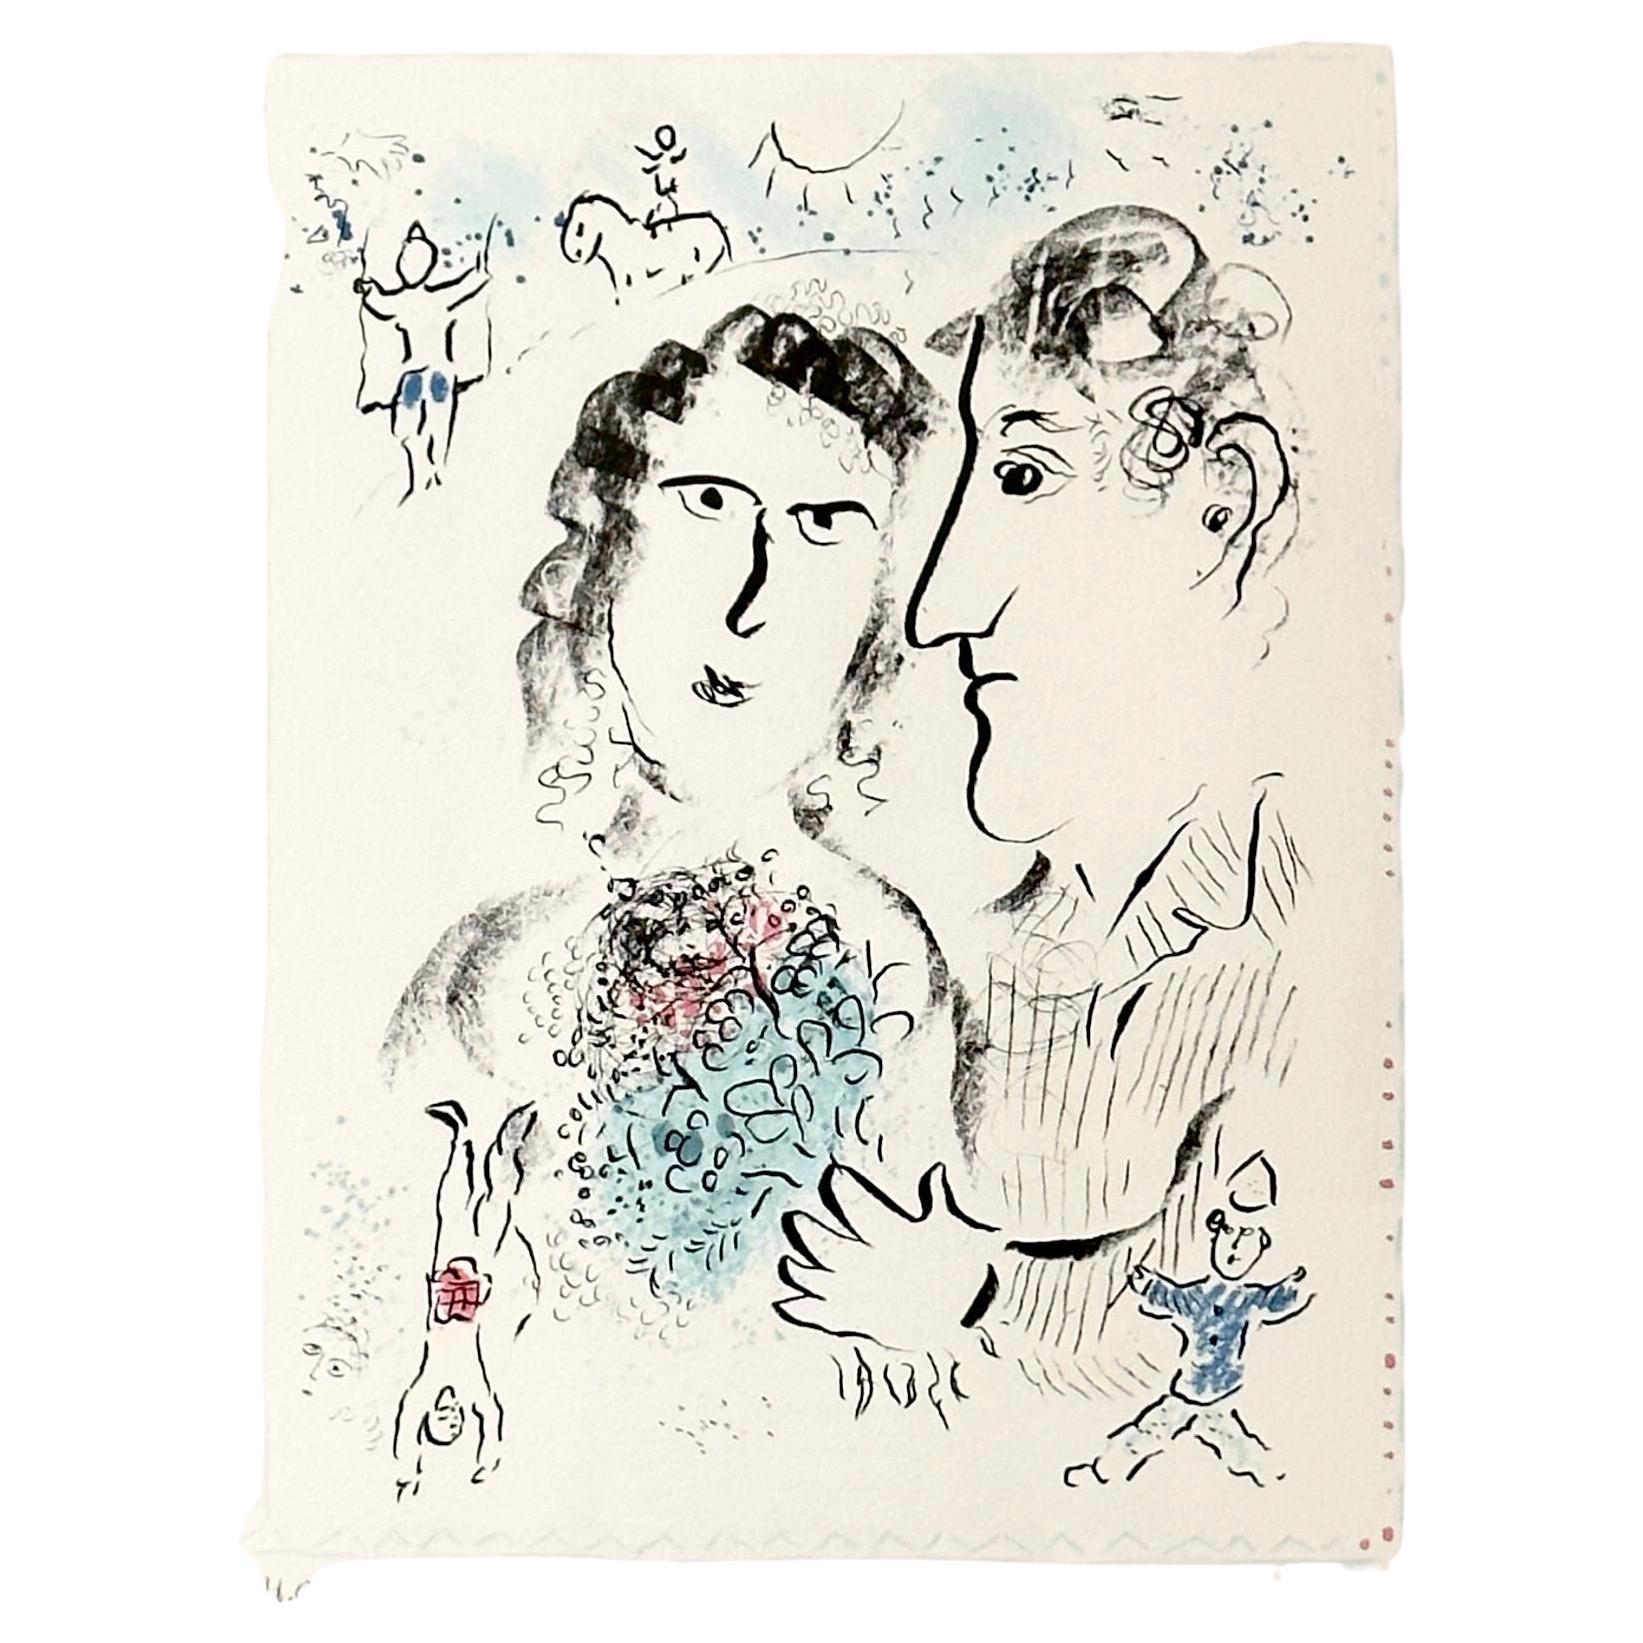 Marc Chagall Litografía firmada a mano Prueba de artista Compromiso en el circo 1983